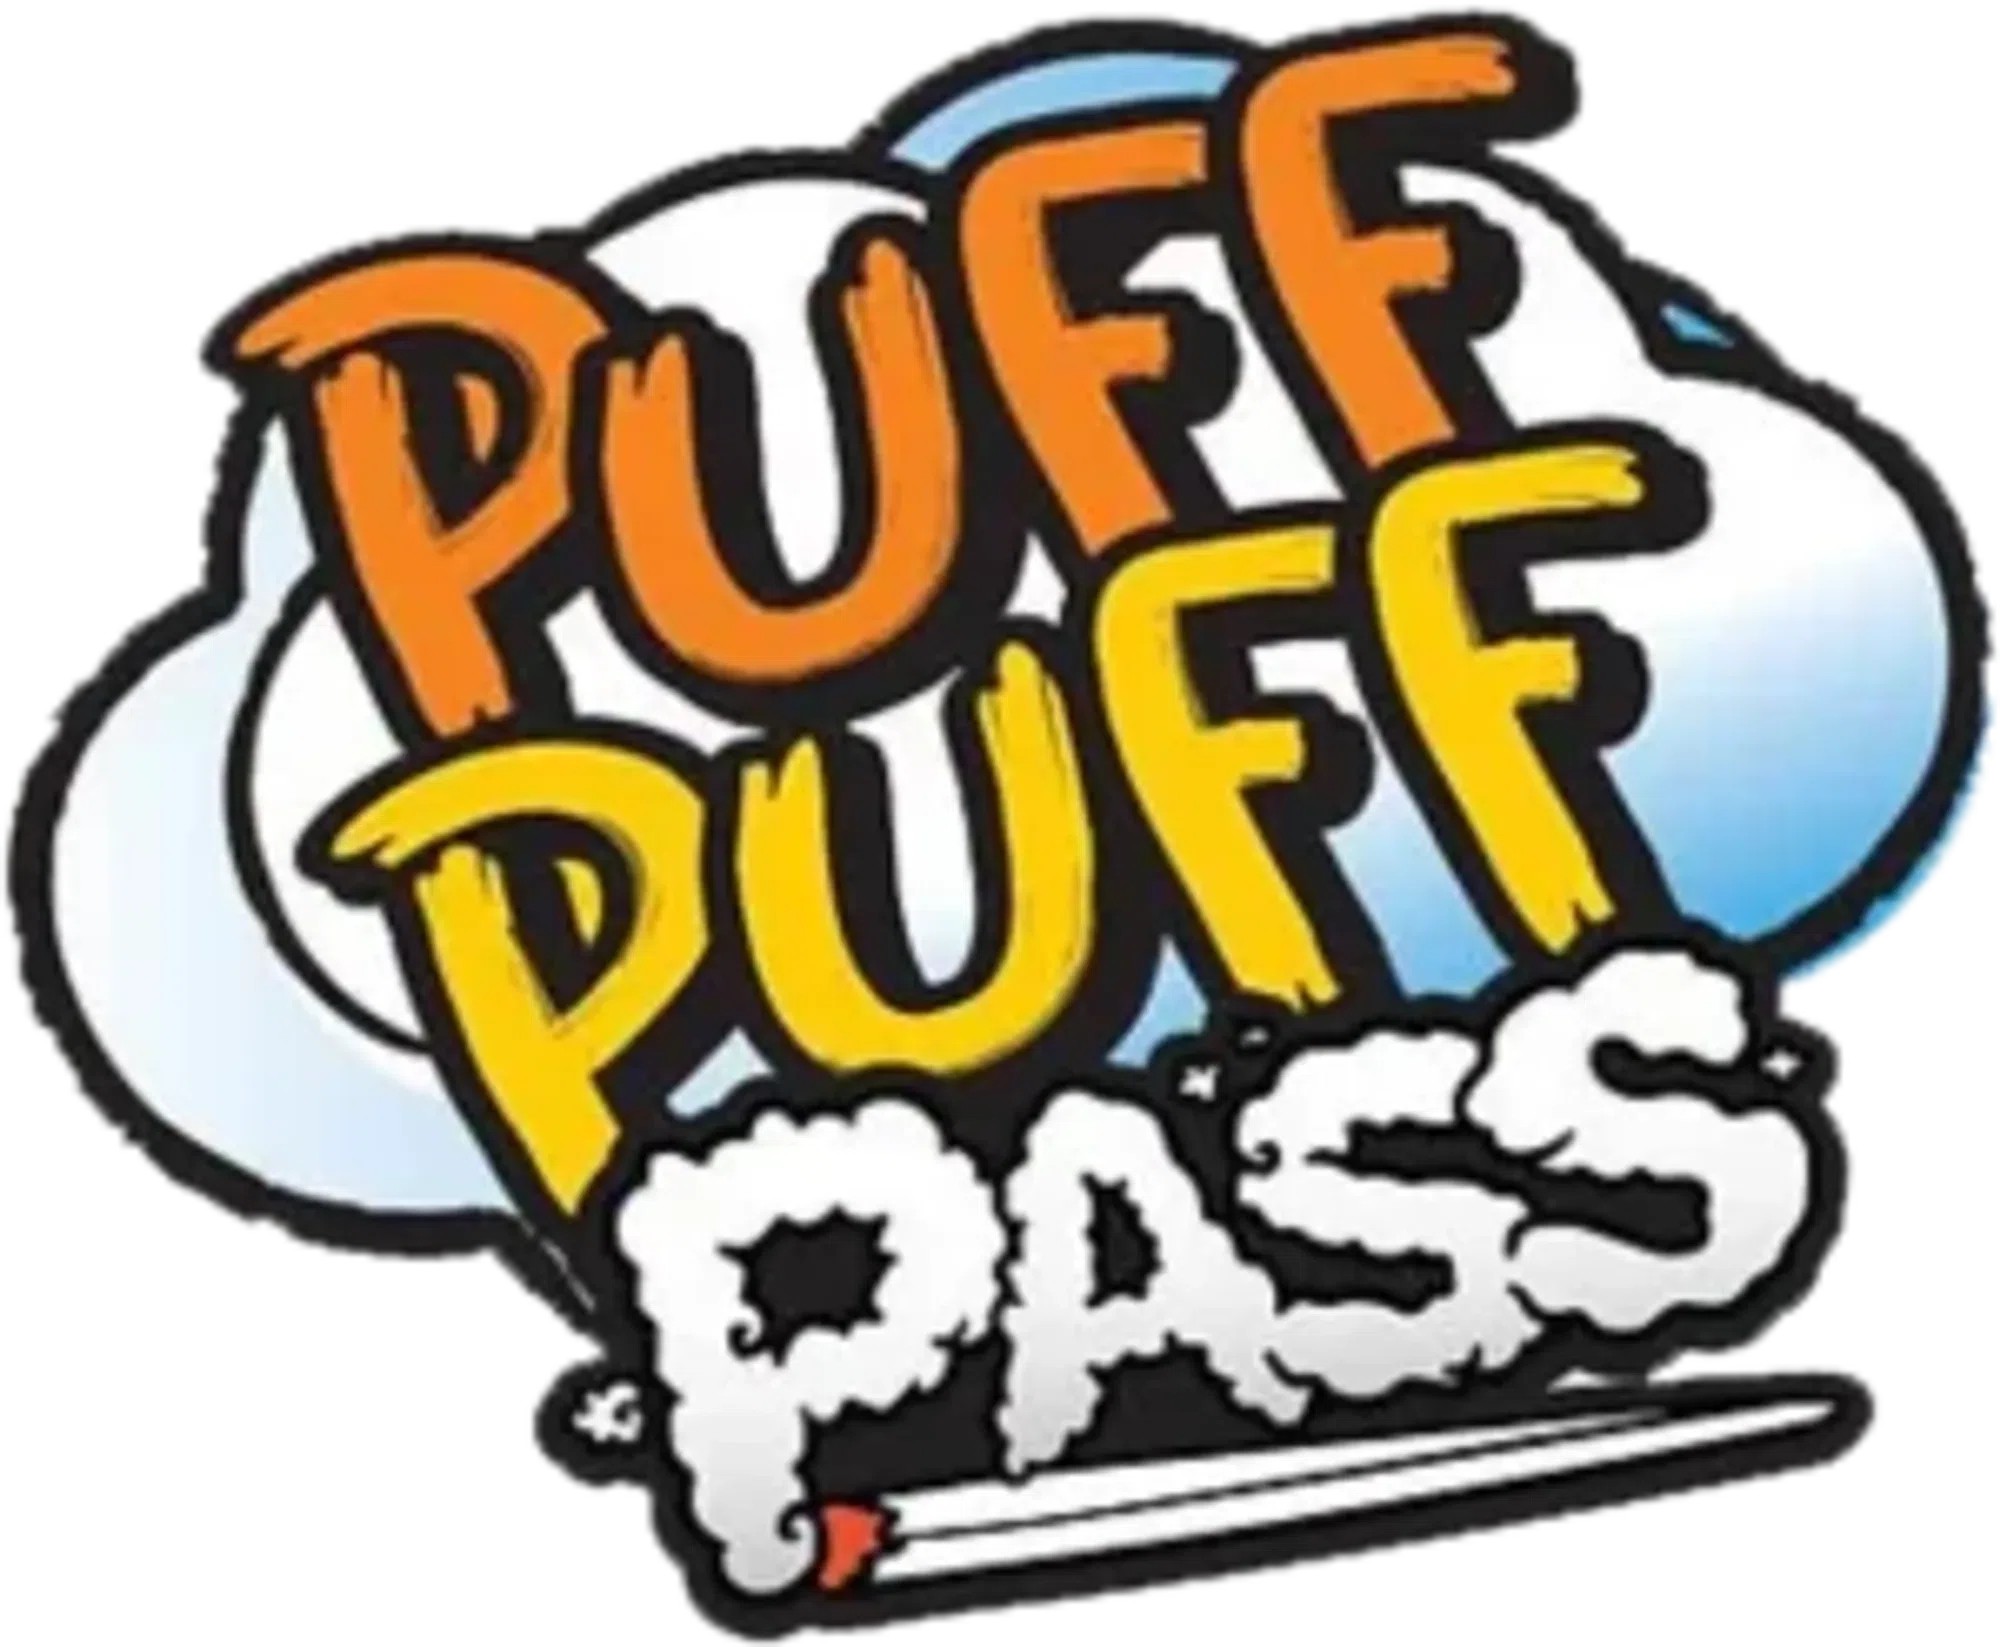 Puff N Pass